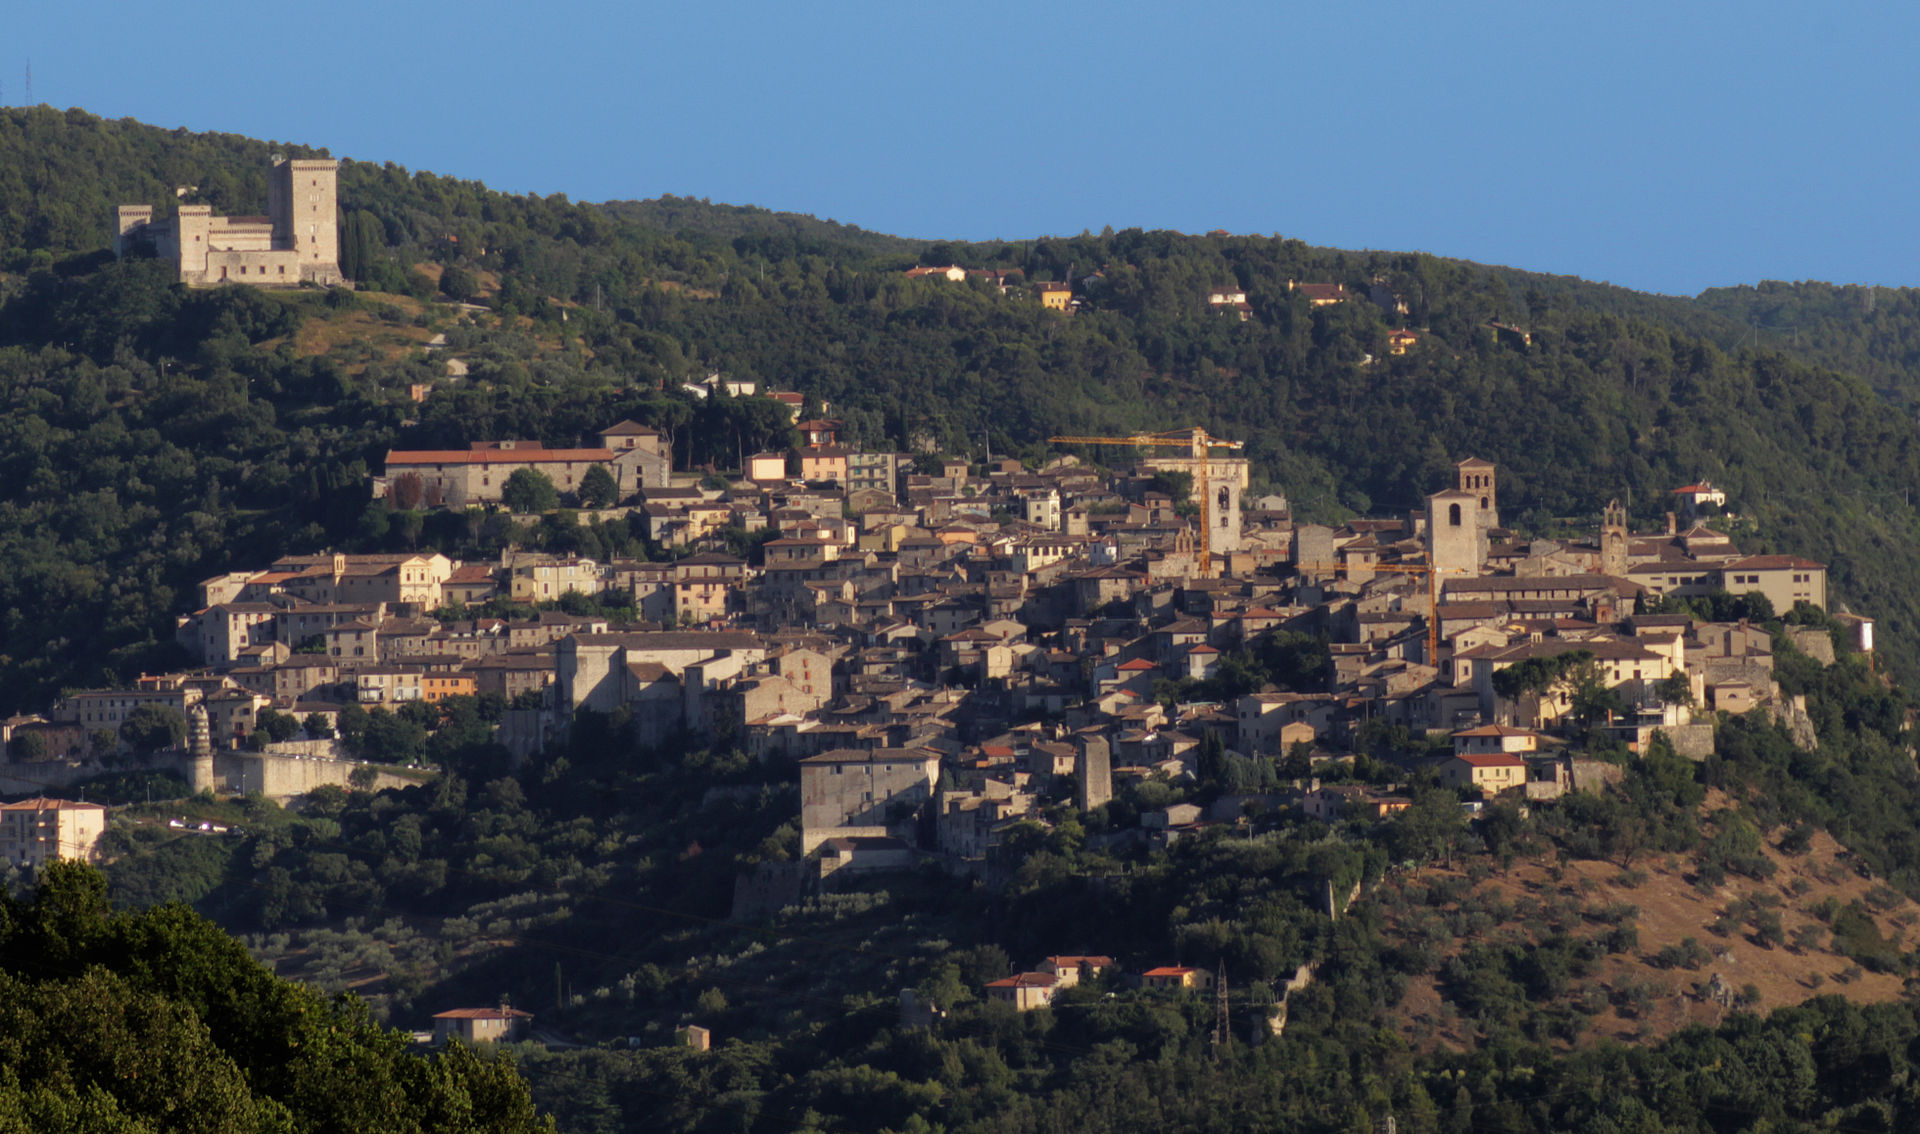 File source: http://commons.wikimedia.org/wiki/File:Narni_Panorama_con_Rocca_dell'Albornoz.jpg